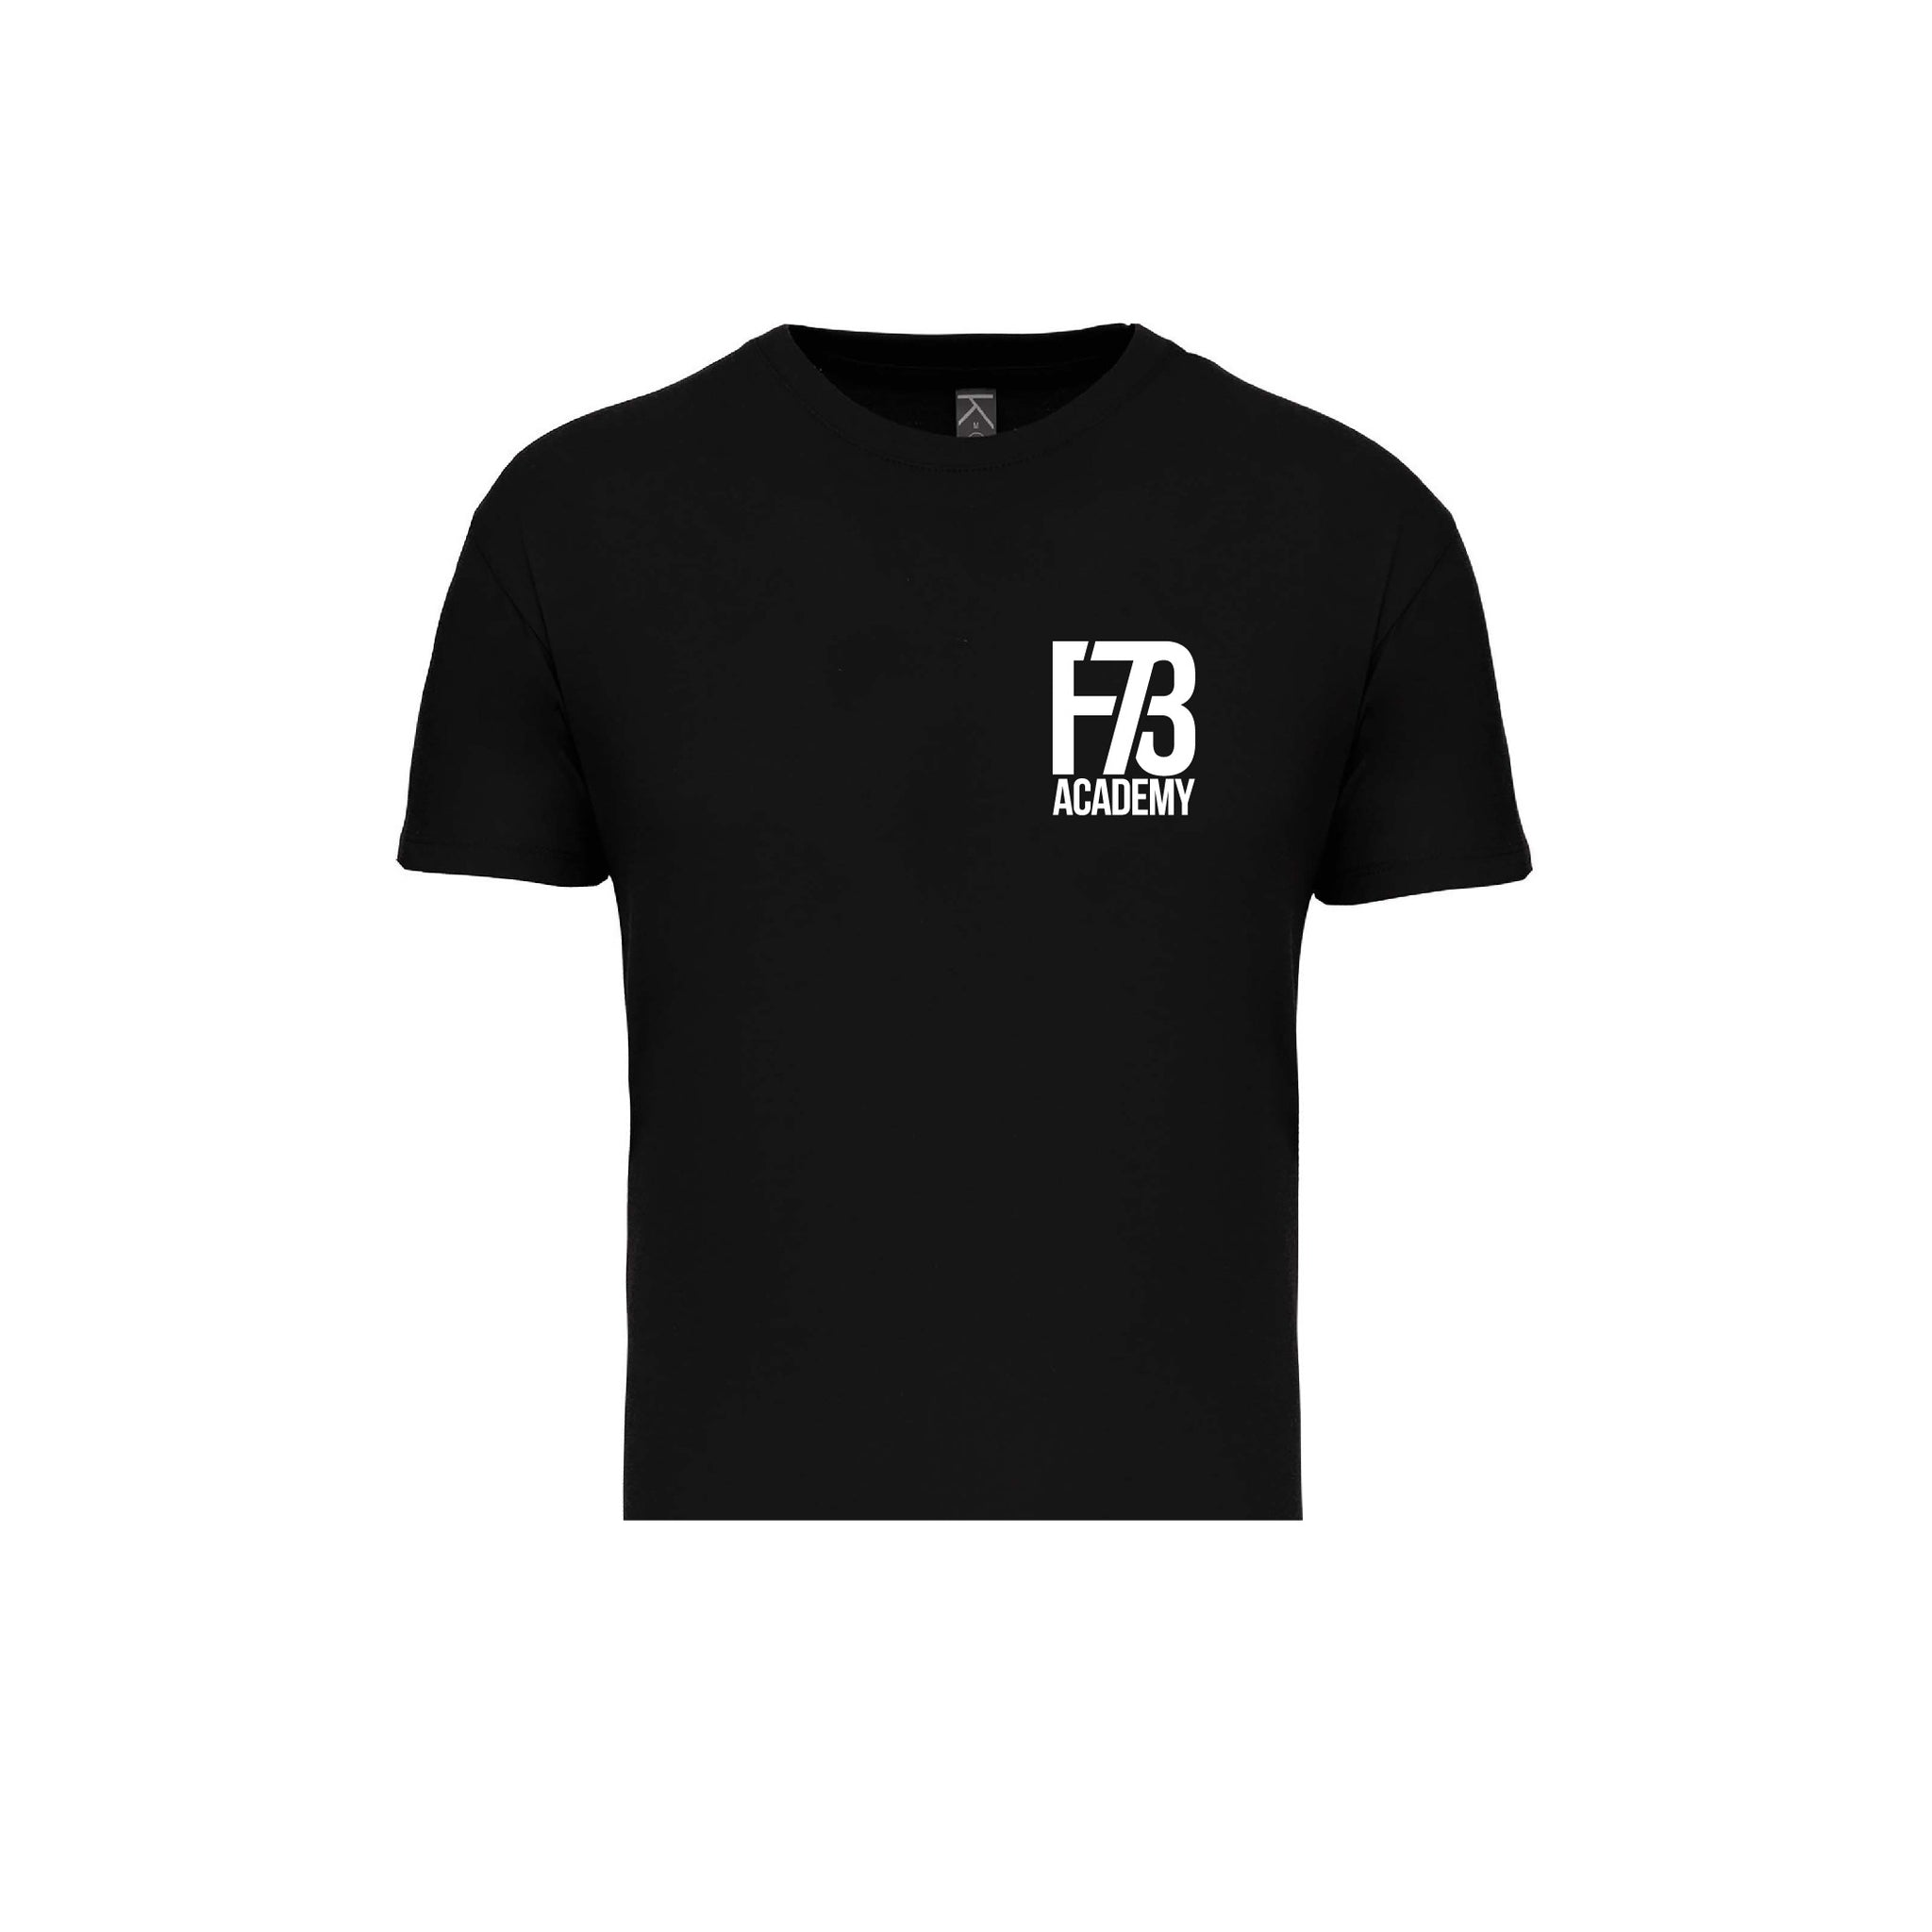 F73 Academy Kinder T-Shirt - schwarz